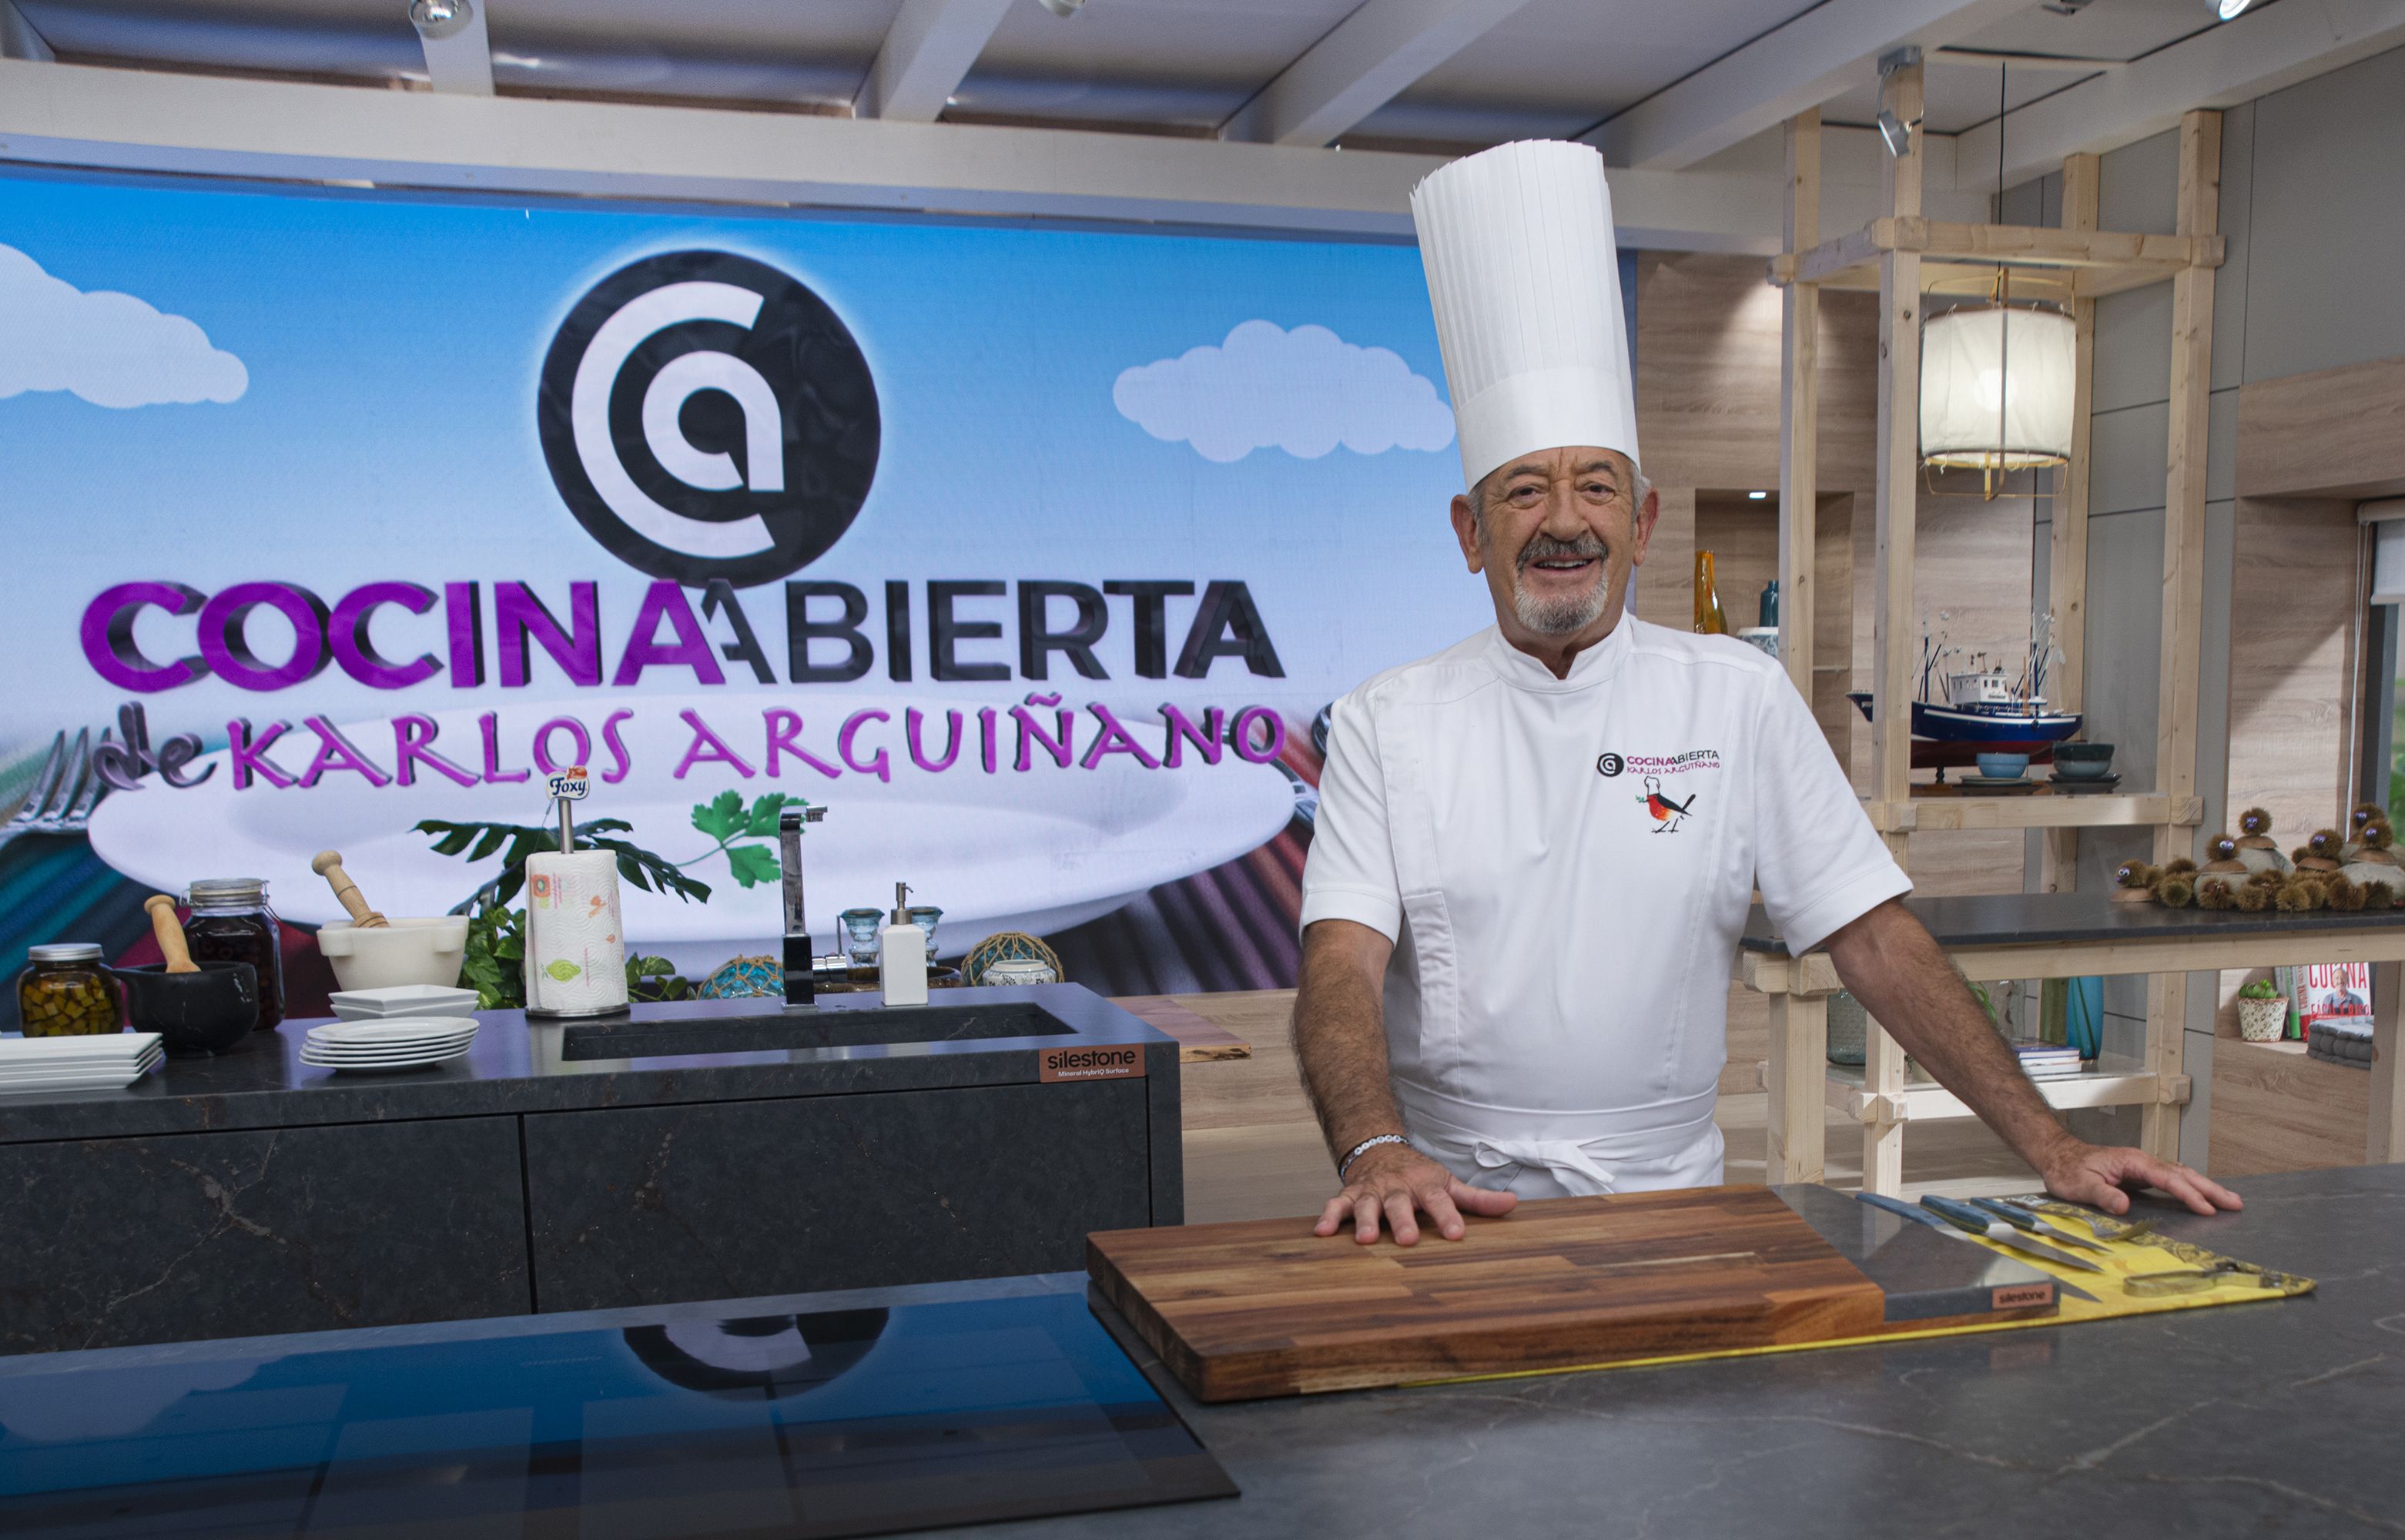 La cocina de tu vida de Karlos Arguiñano - Página profesional de